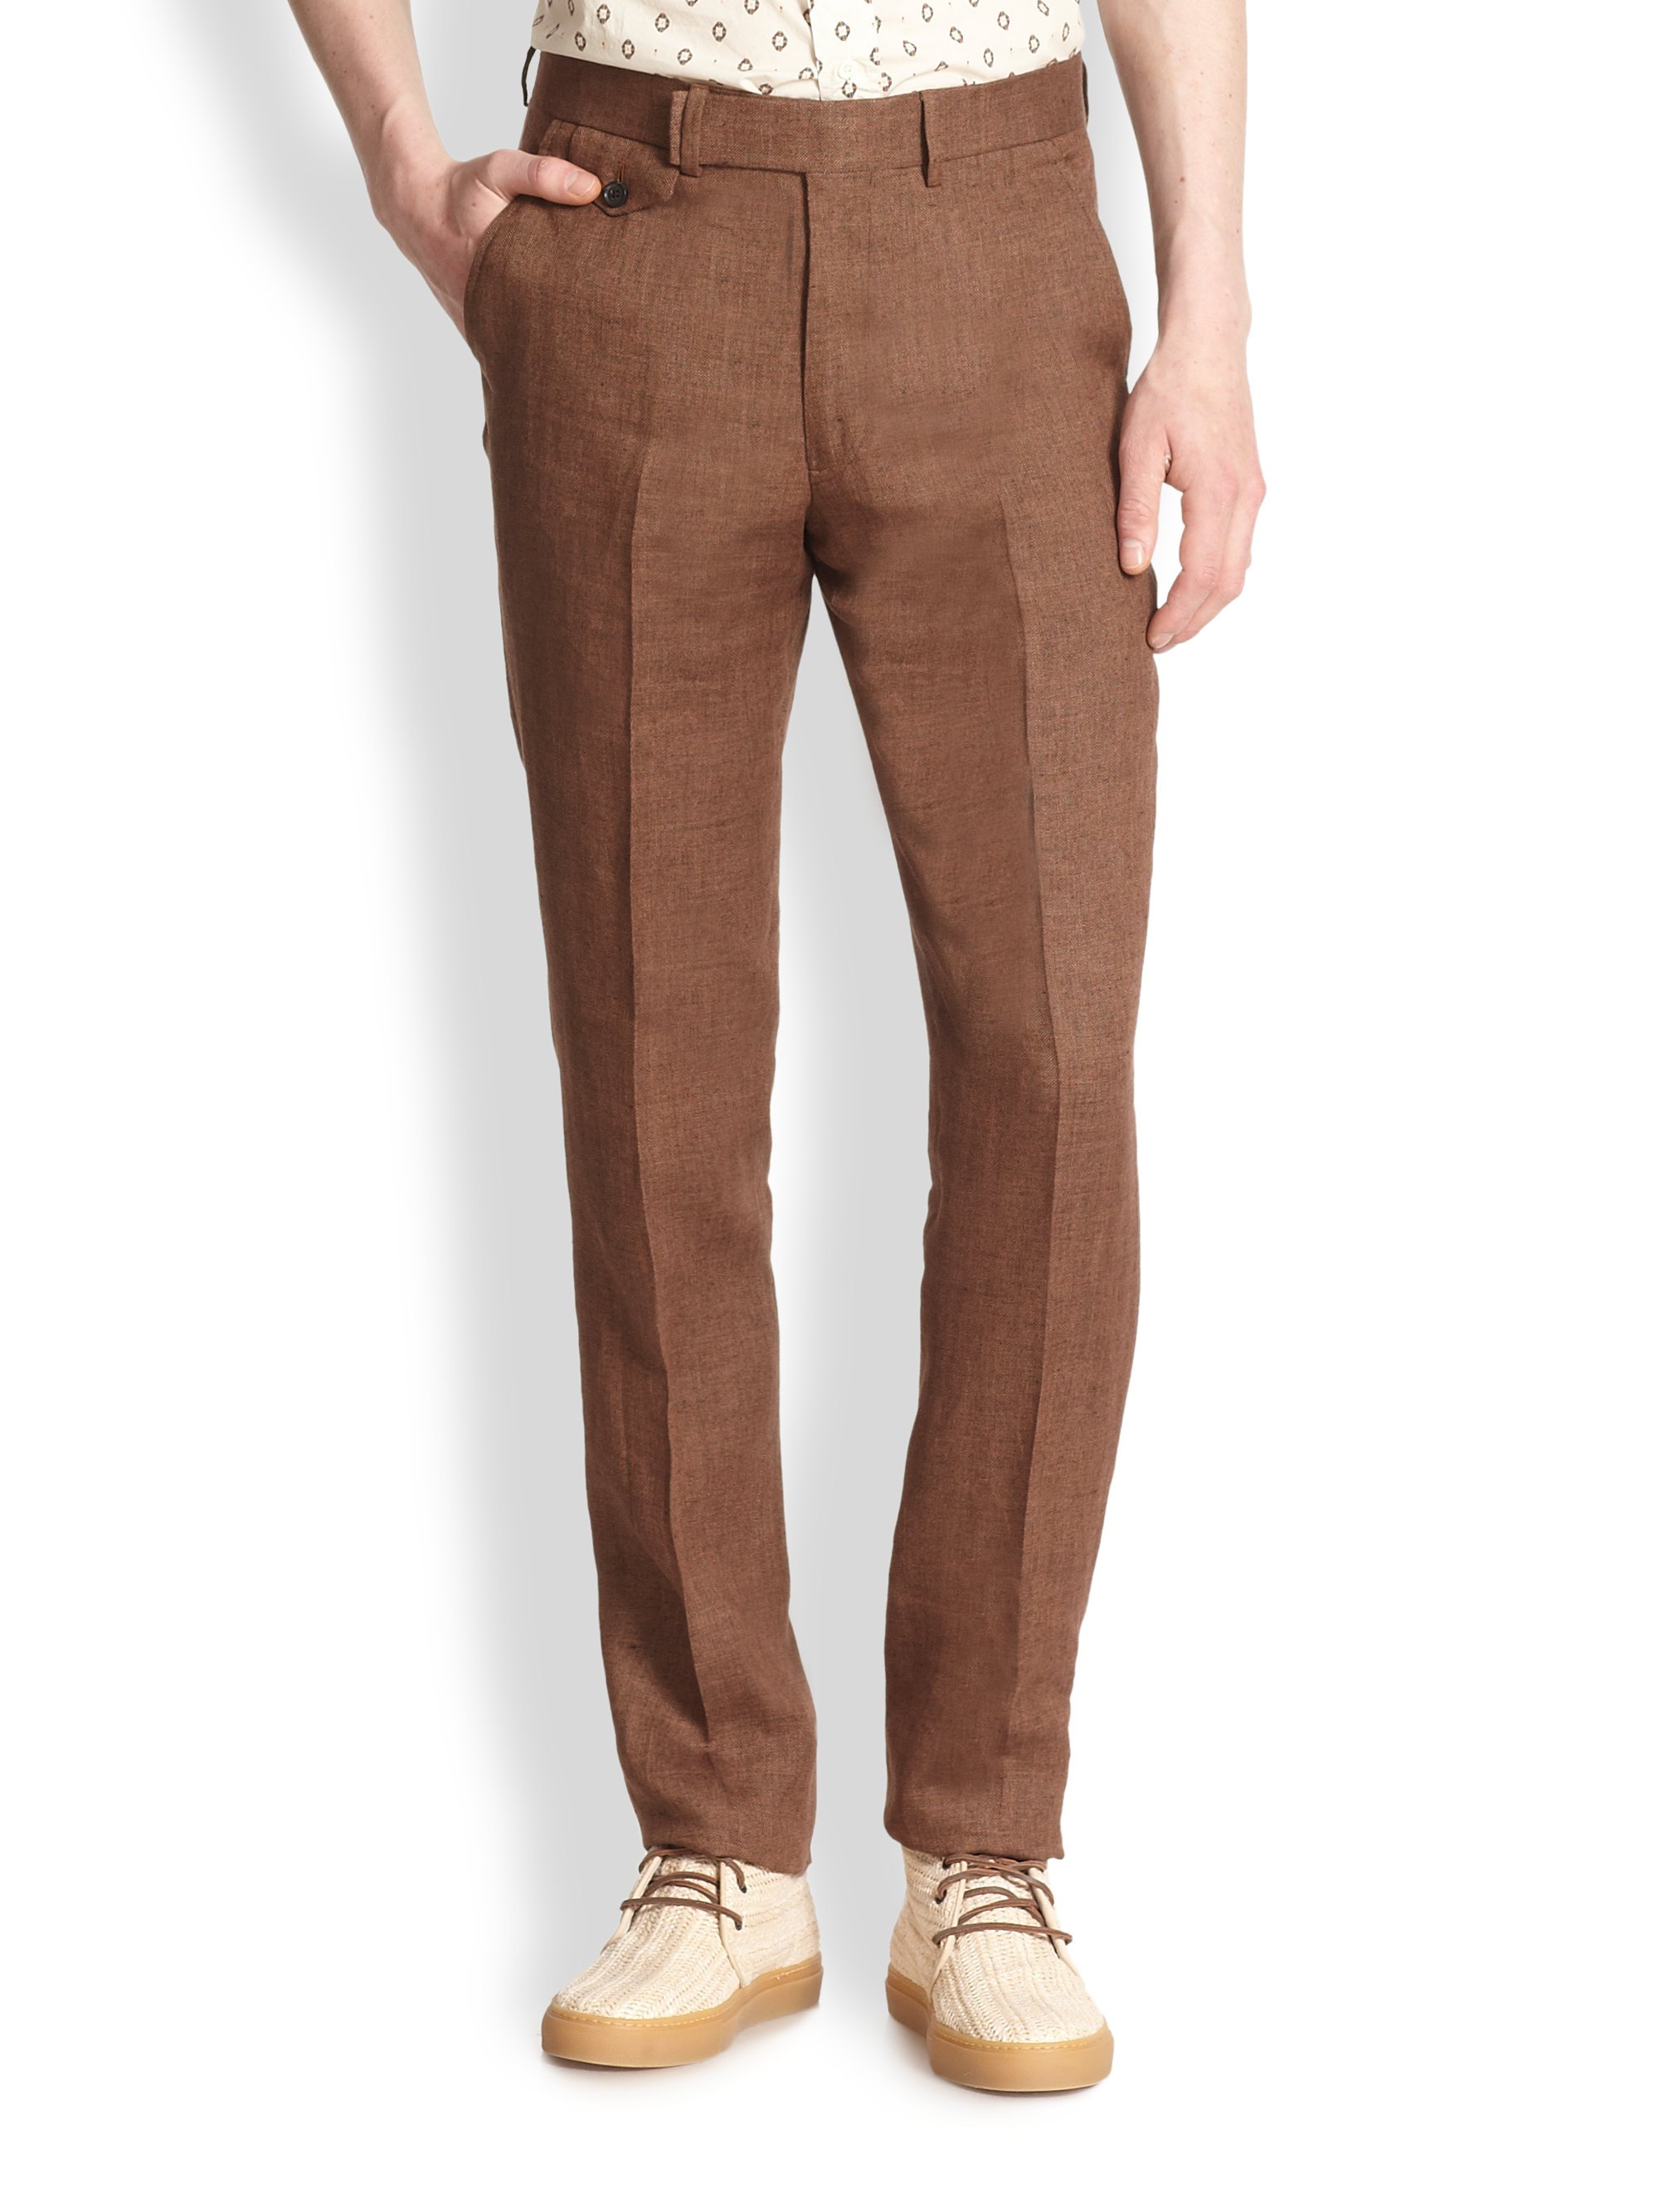 Lyst - Billy Reid Dorsey Linen Pants in Brown for Men